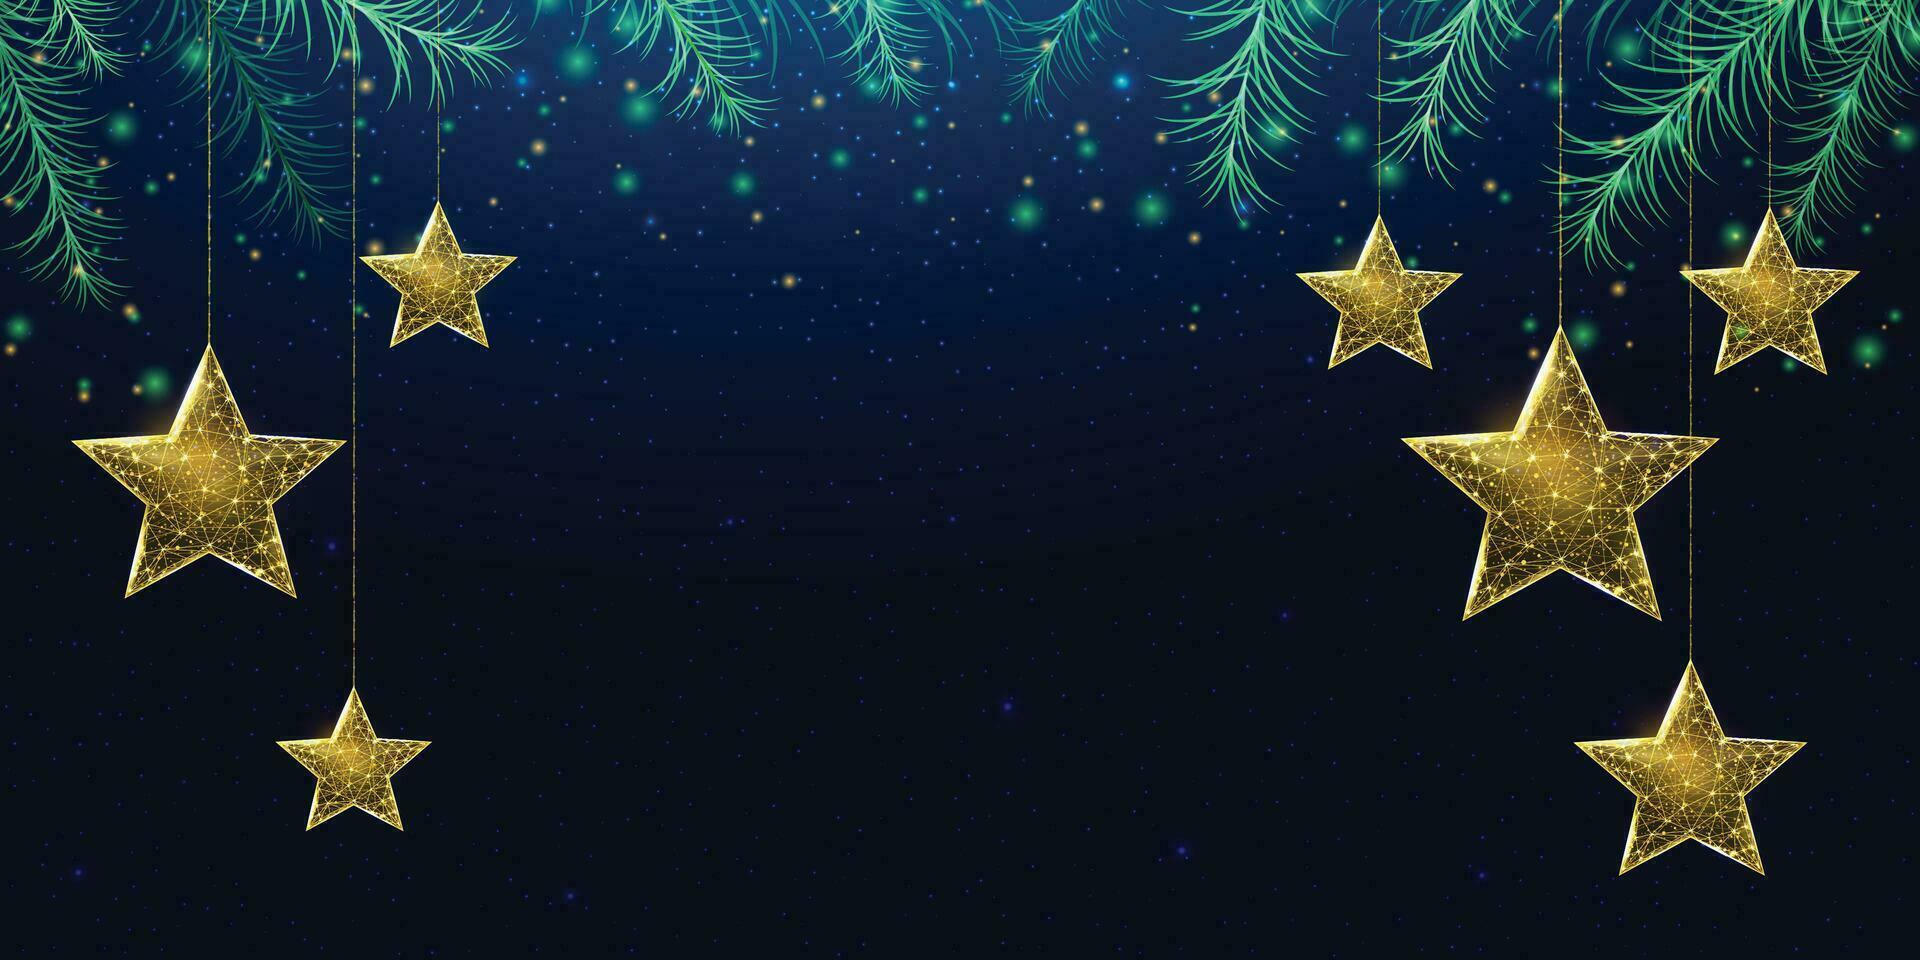 estrellas navideñas de estructura metálica y ramas de árboles de navidad, estilo polivinílico bajo. pancarta de año nuevo. ilustración vectorial 3d moderna abstracta sobre fondo azul. vector